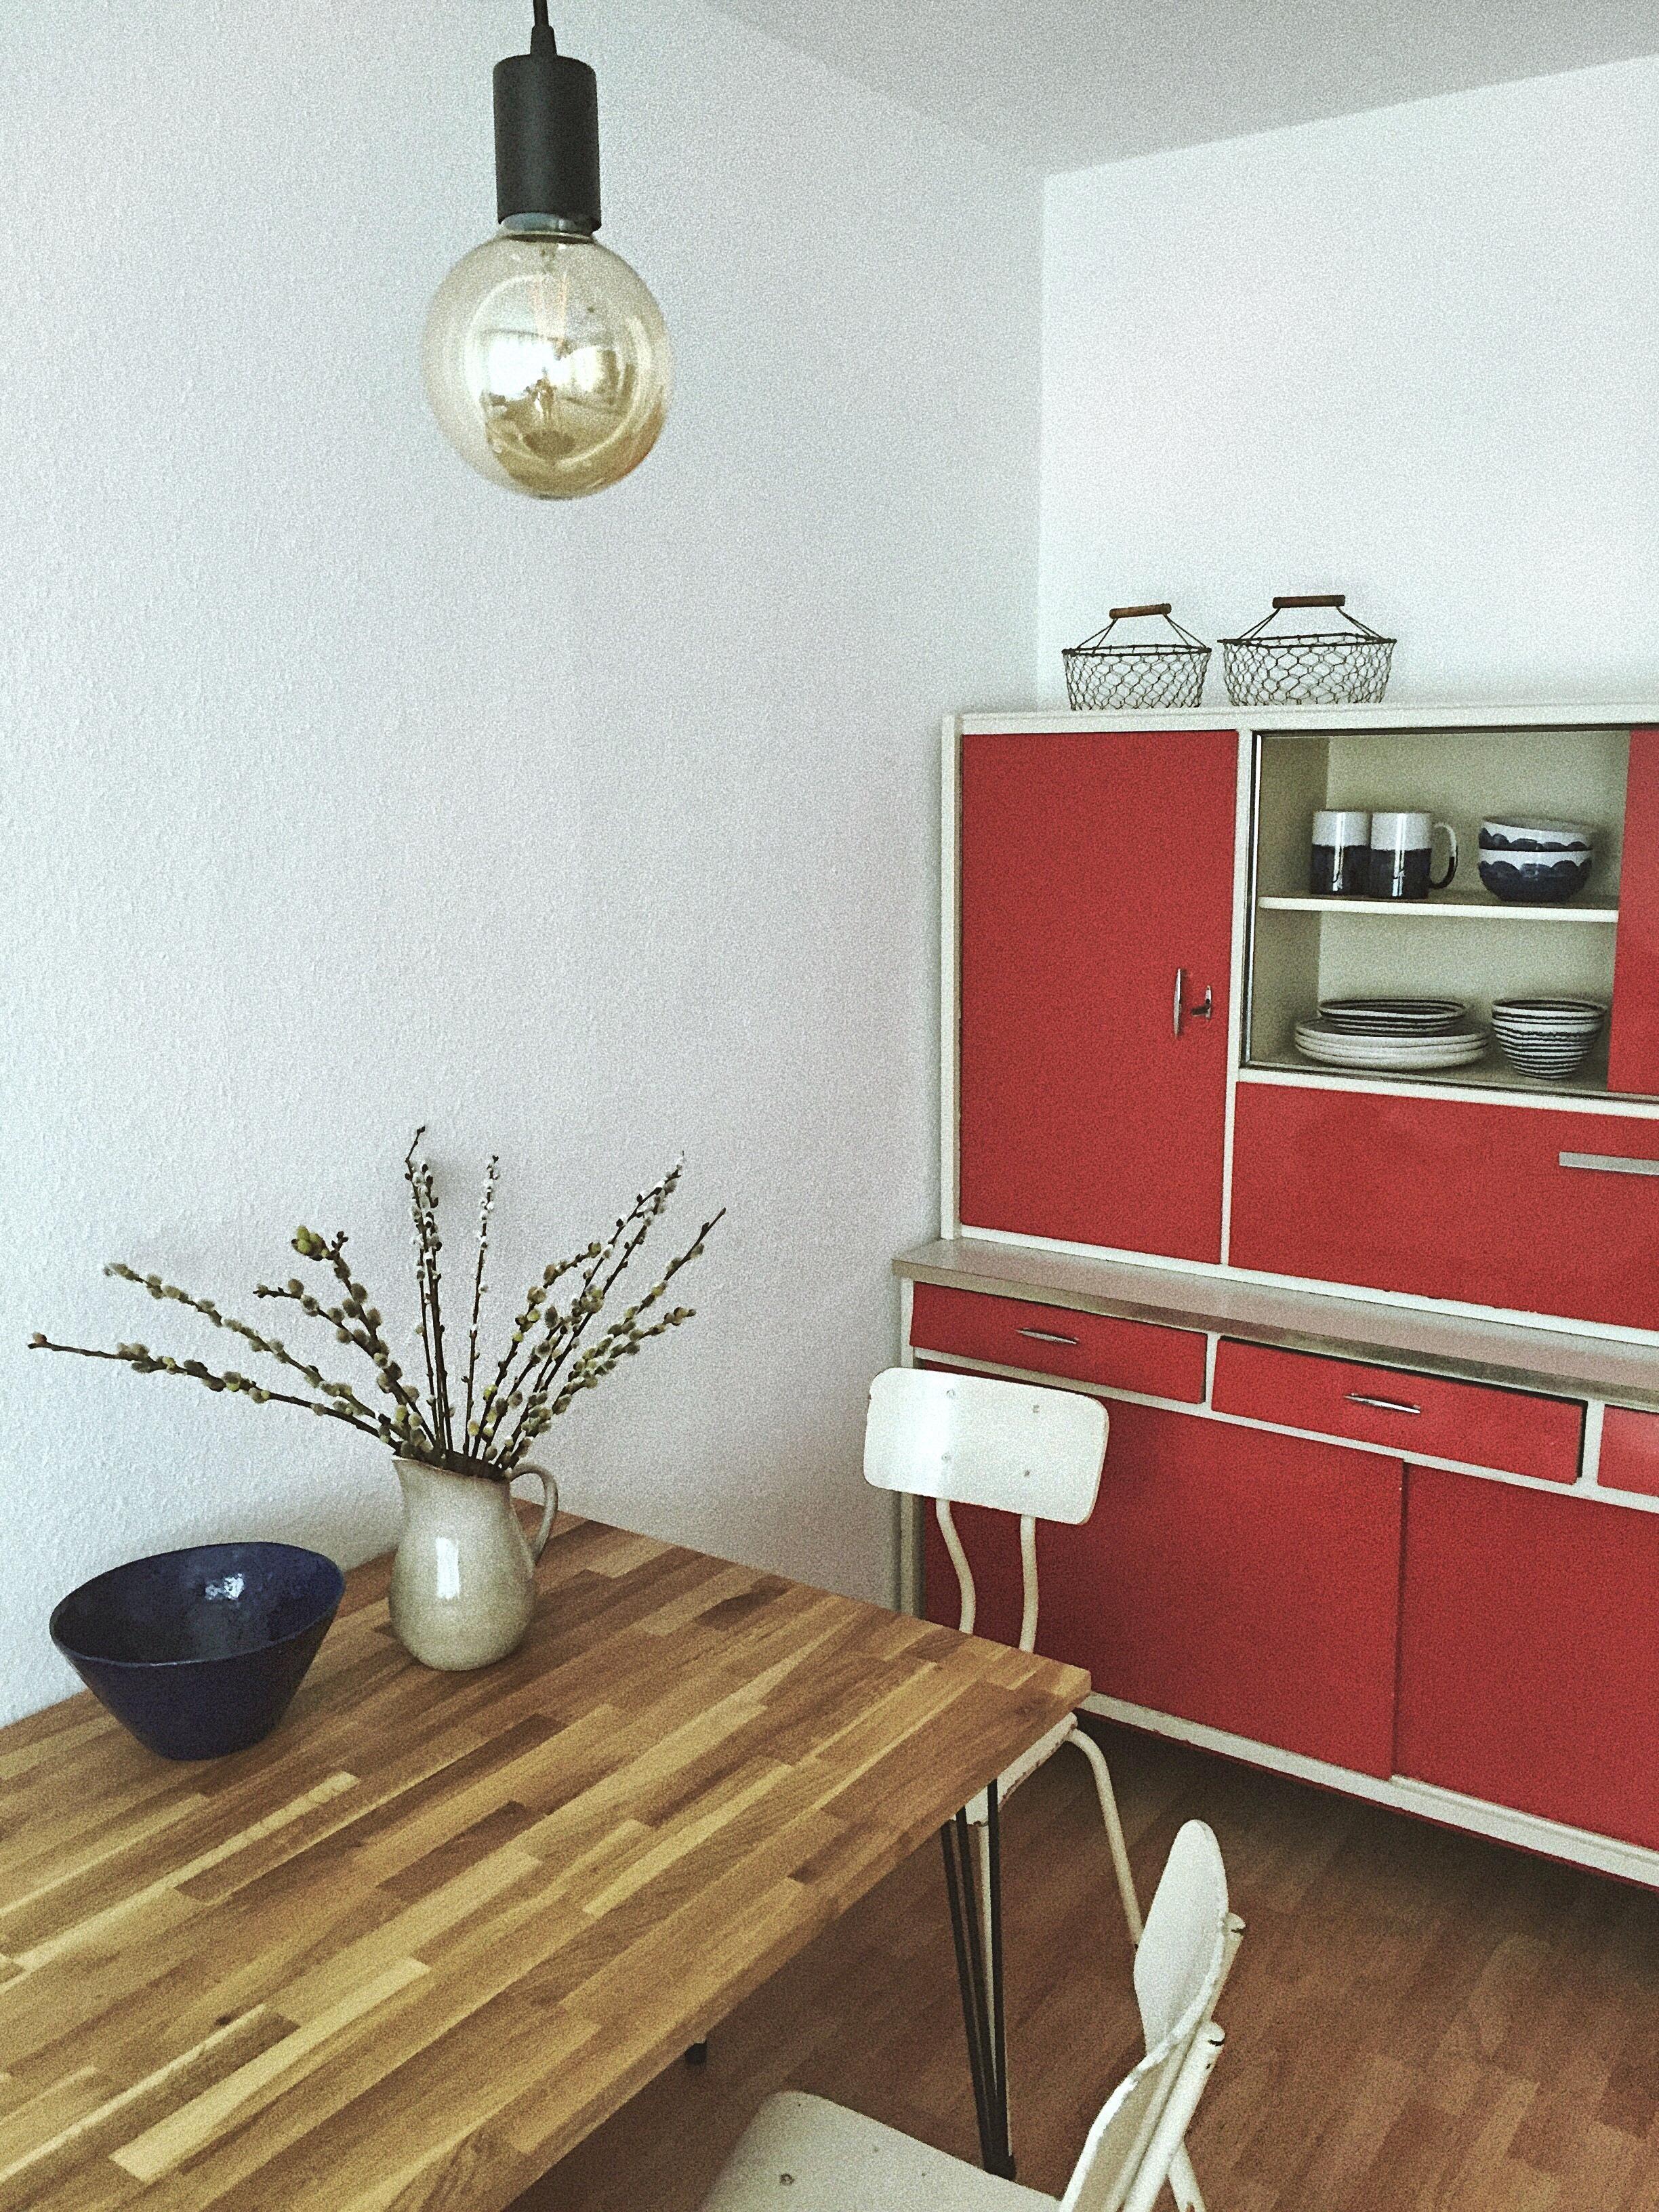 Habe diesen tollen Retro Küchenschrank aus den 50er Jahren bei Ebay gefunden. #50s #retro #industrial #vintage 